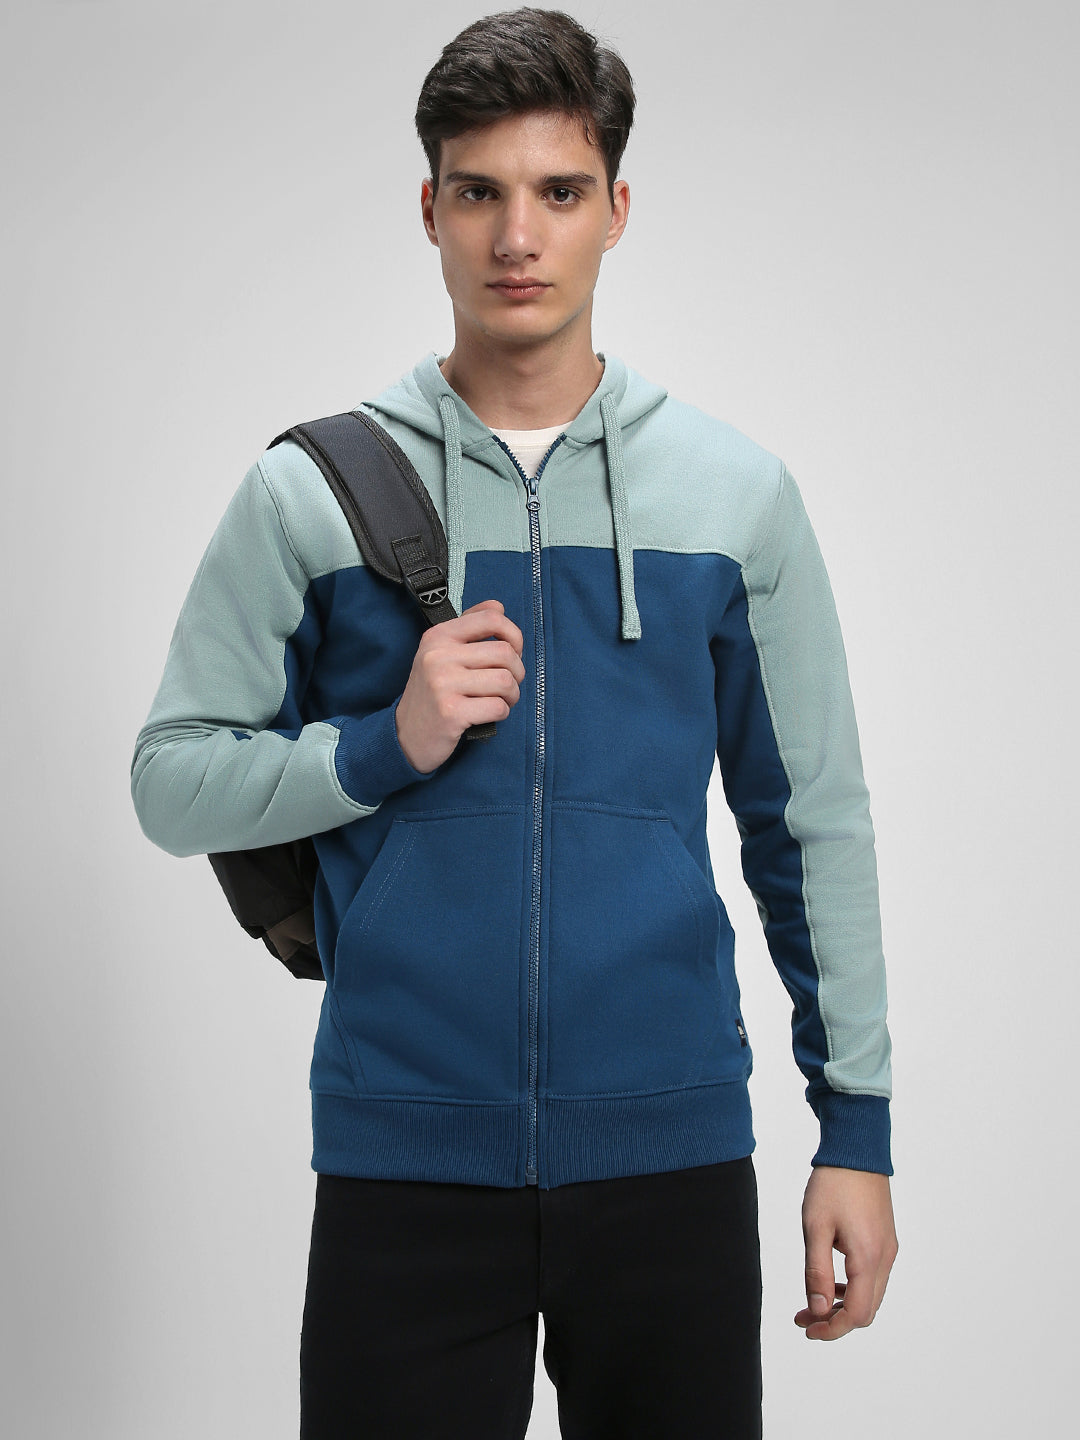 Dennis Lingo Men's Blue  Full Sleeves Zipper hoodie Sweatshirt